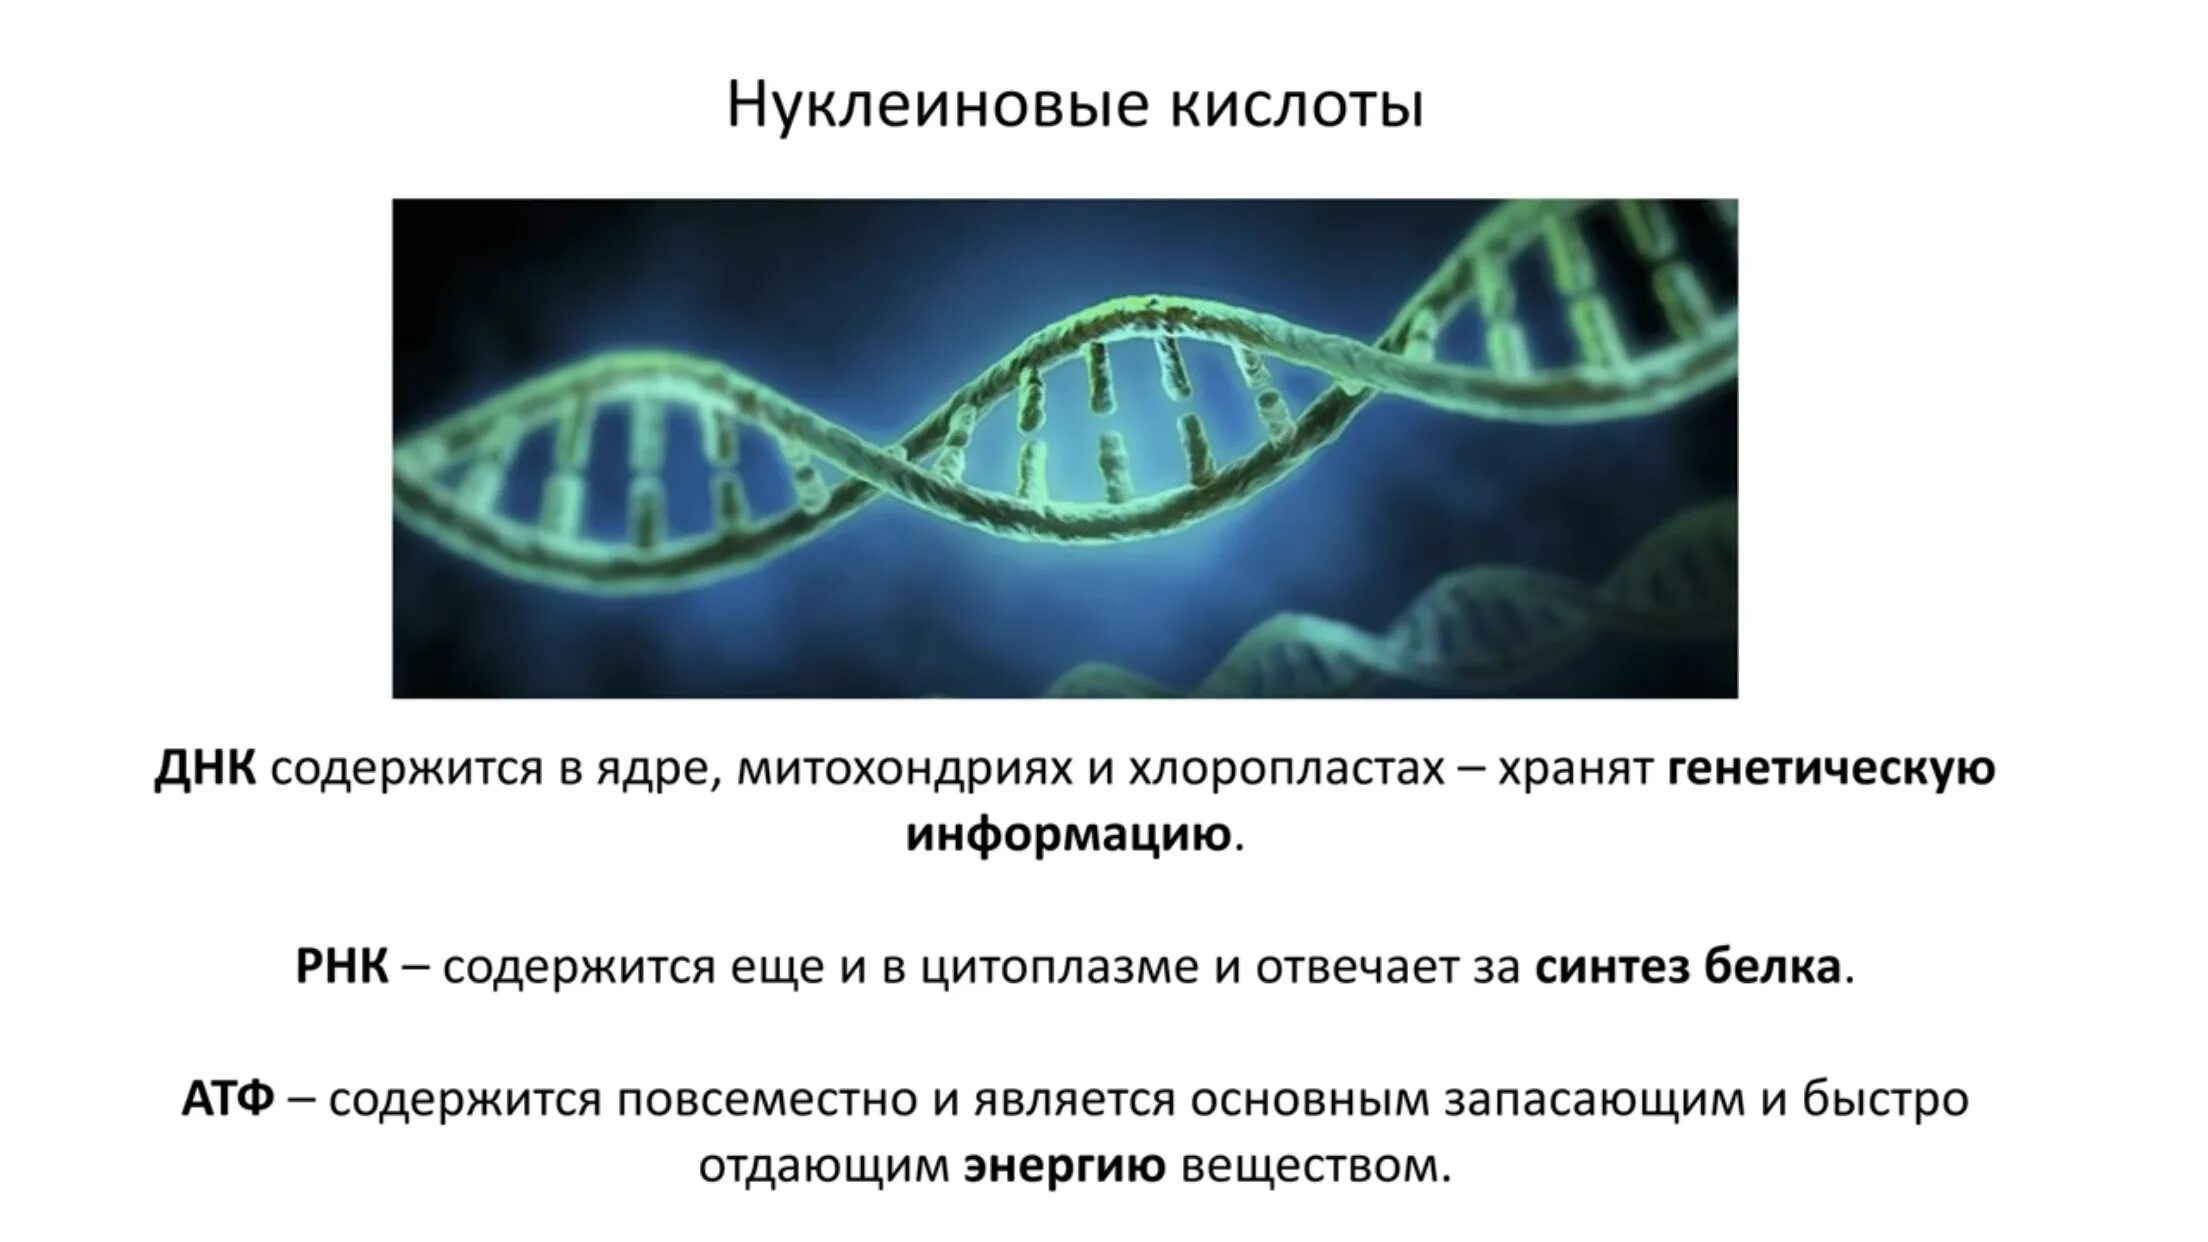 Кольцевая ДНК В хлоропластах. В ядре содержатся нуклеиновые кислоты.